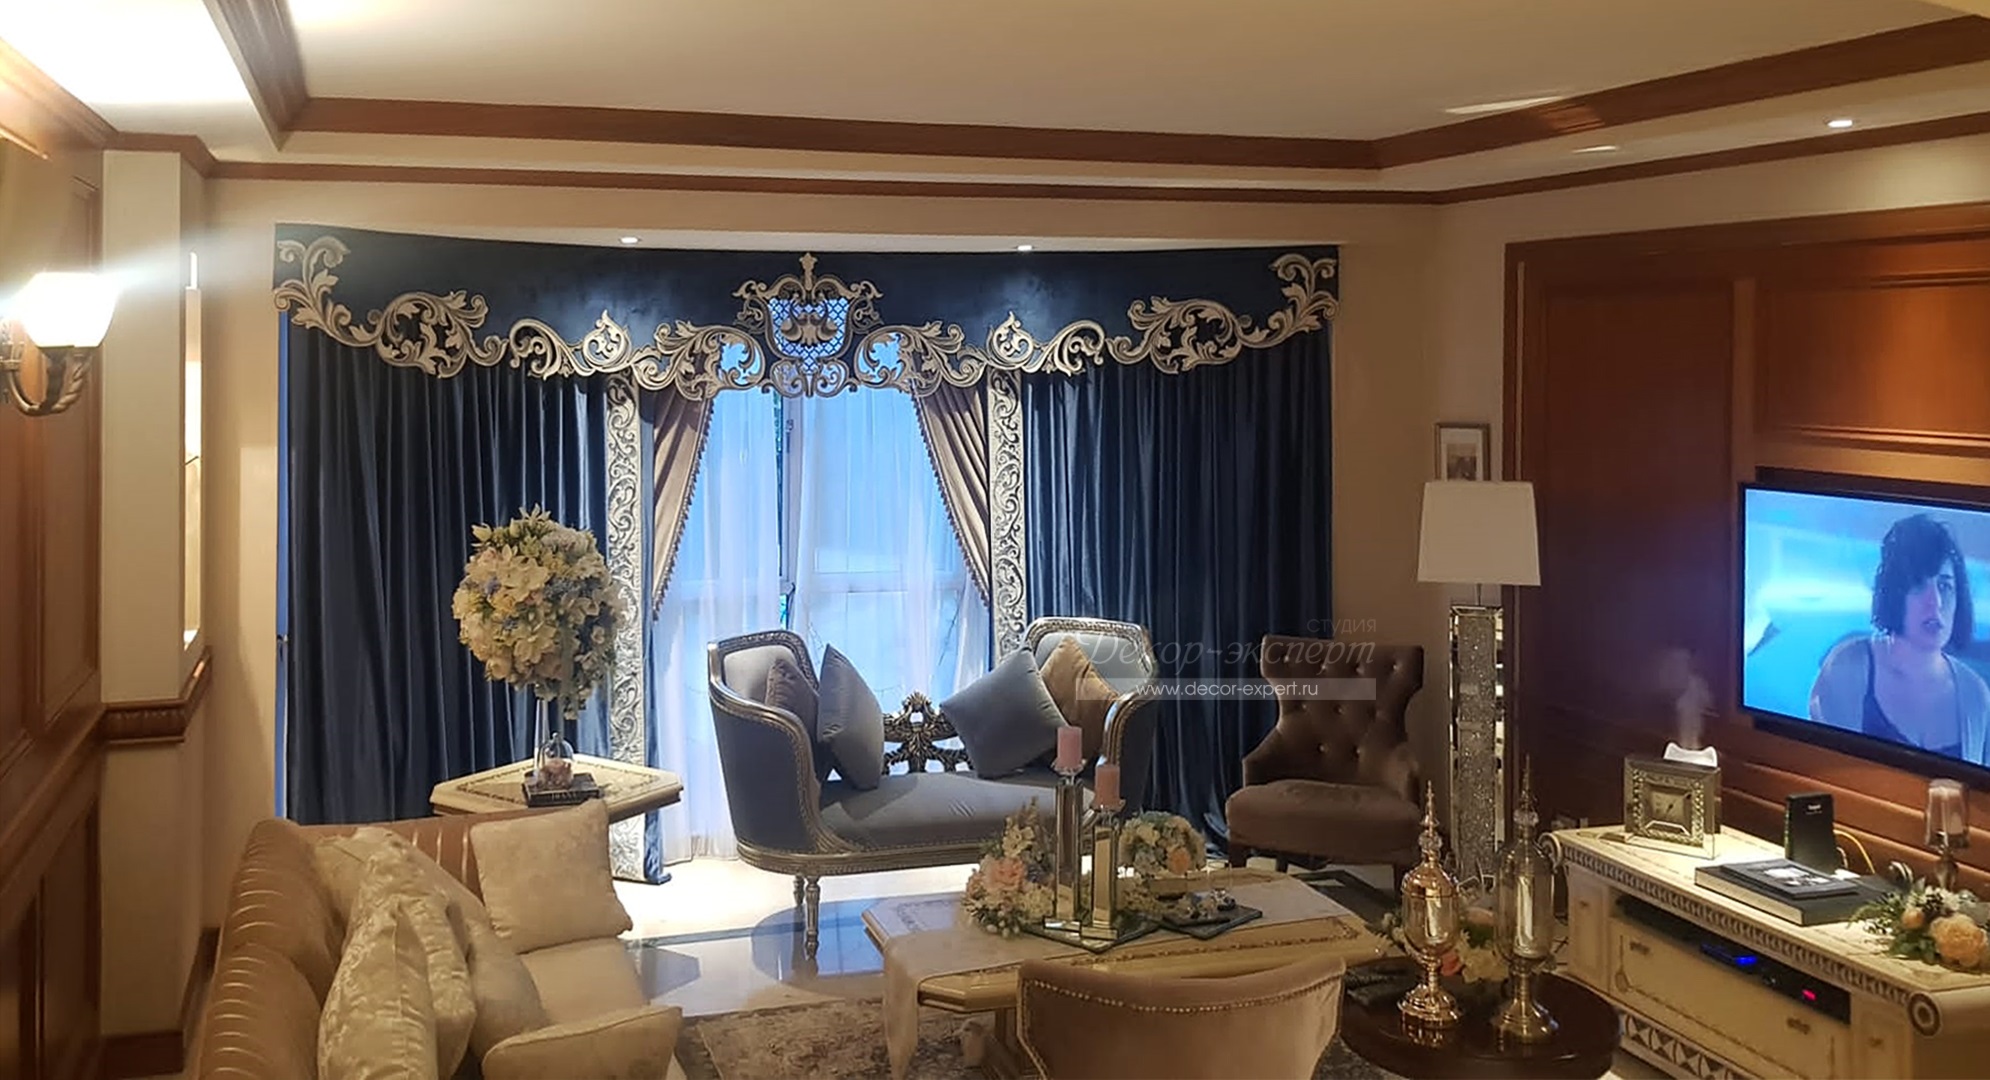 Общий вид комплекта бархатных штор с бордюром и ажурного ламбрекена Сингапур с отделкой  шнурами, стразами и бусинами в интерьере гостиной заказчика.